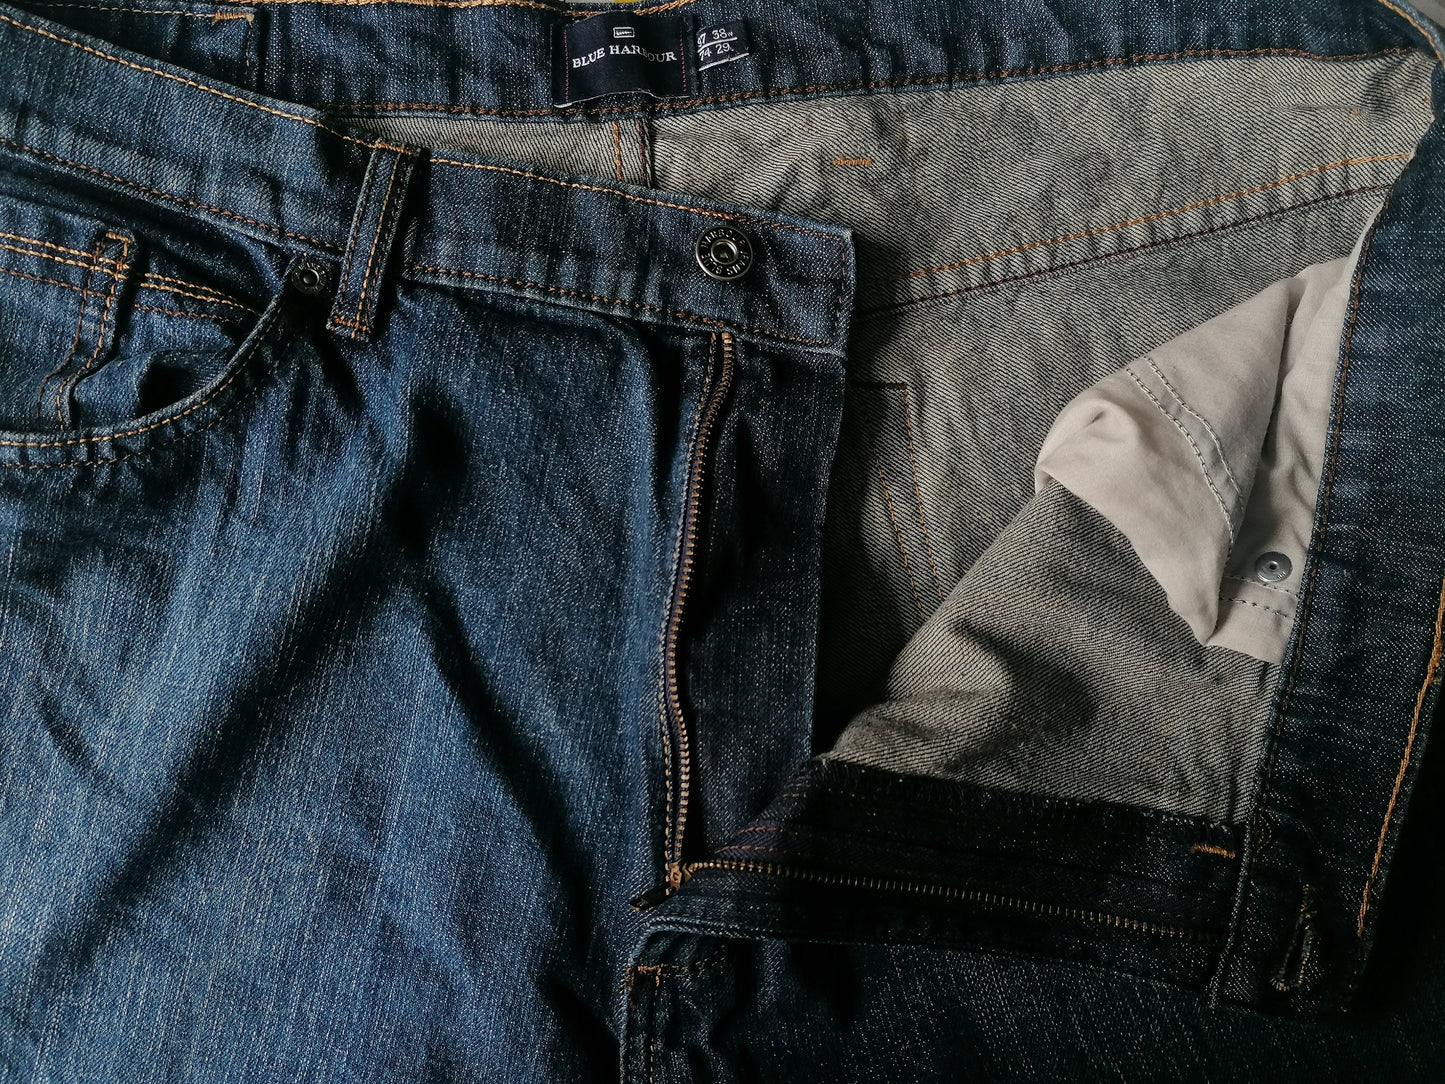 Blue Harbor Jeans. Dunkelblau gefärbt. Größe W38 - L30.